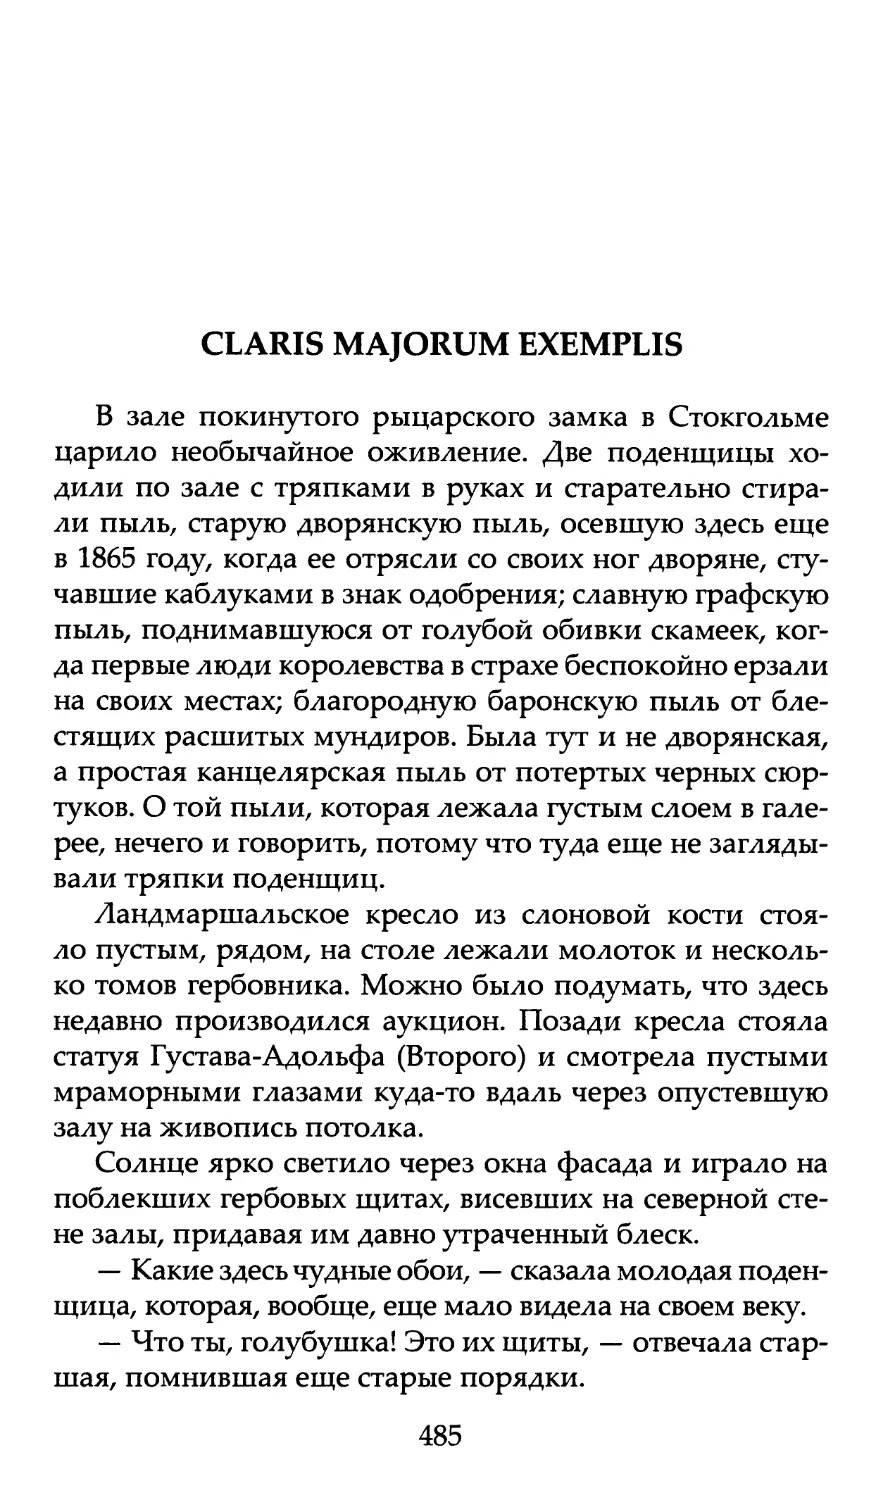 Claris majorum exemplis